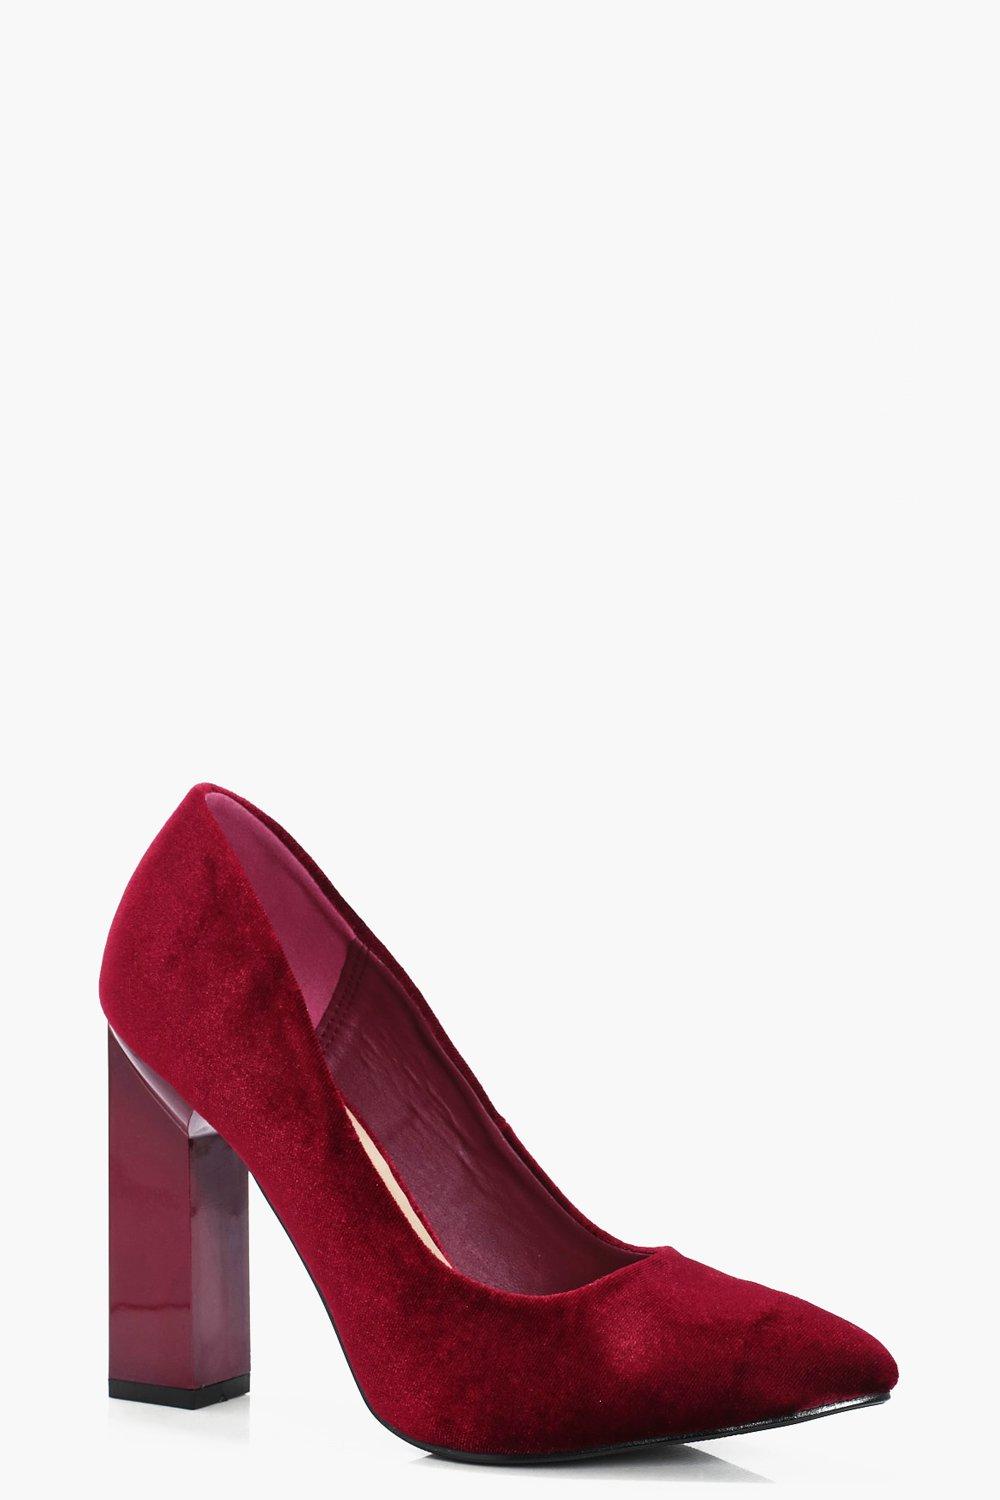 burgundy shoes block heel